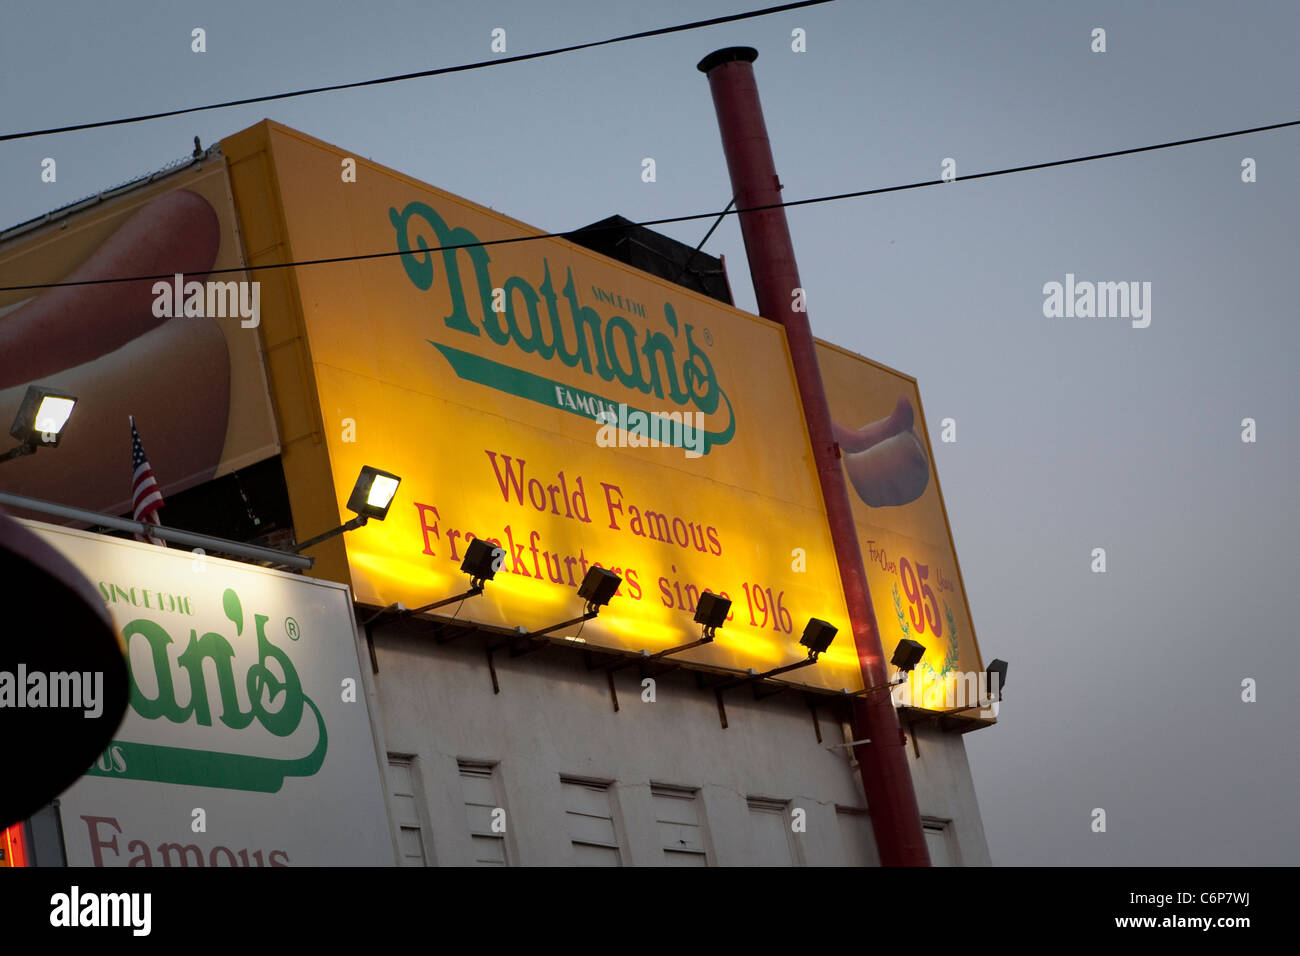 Das Original steht Nathans berühmtes Restaurant ist auf Coney Island im New Yorker Stadtbezirk Brooklyn abgebildet. Stockfoto